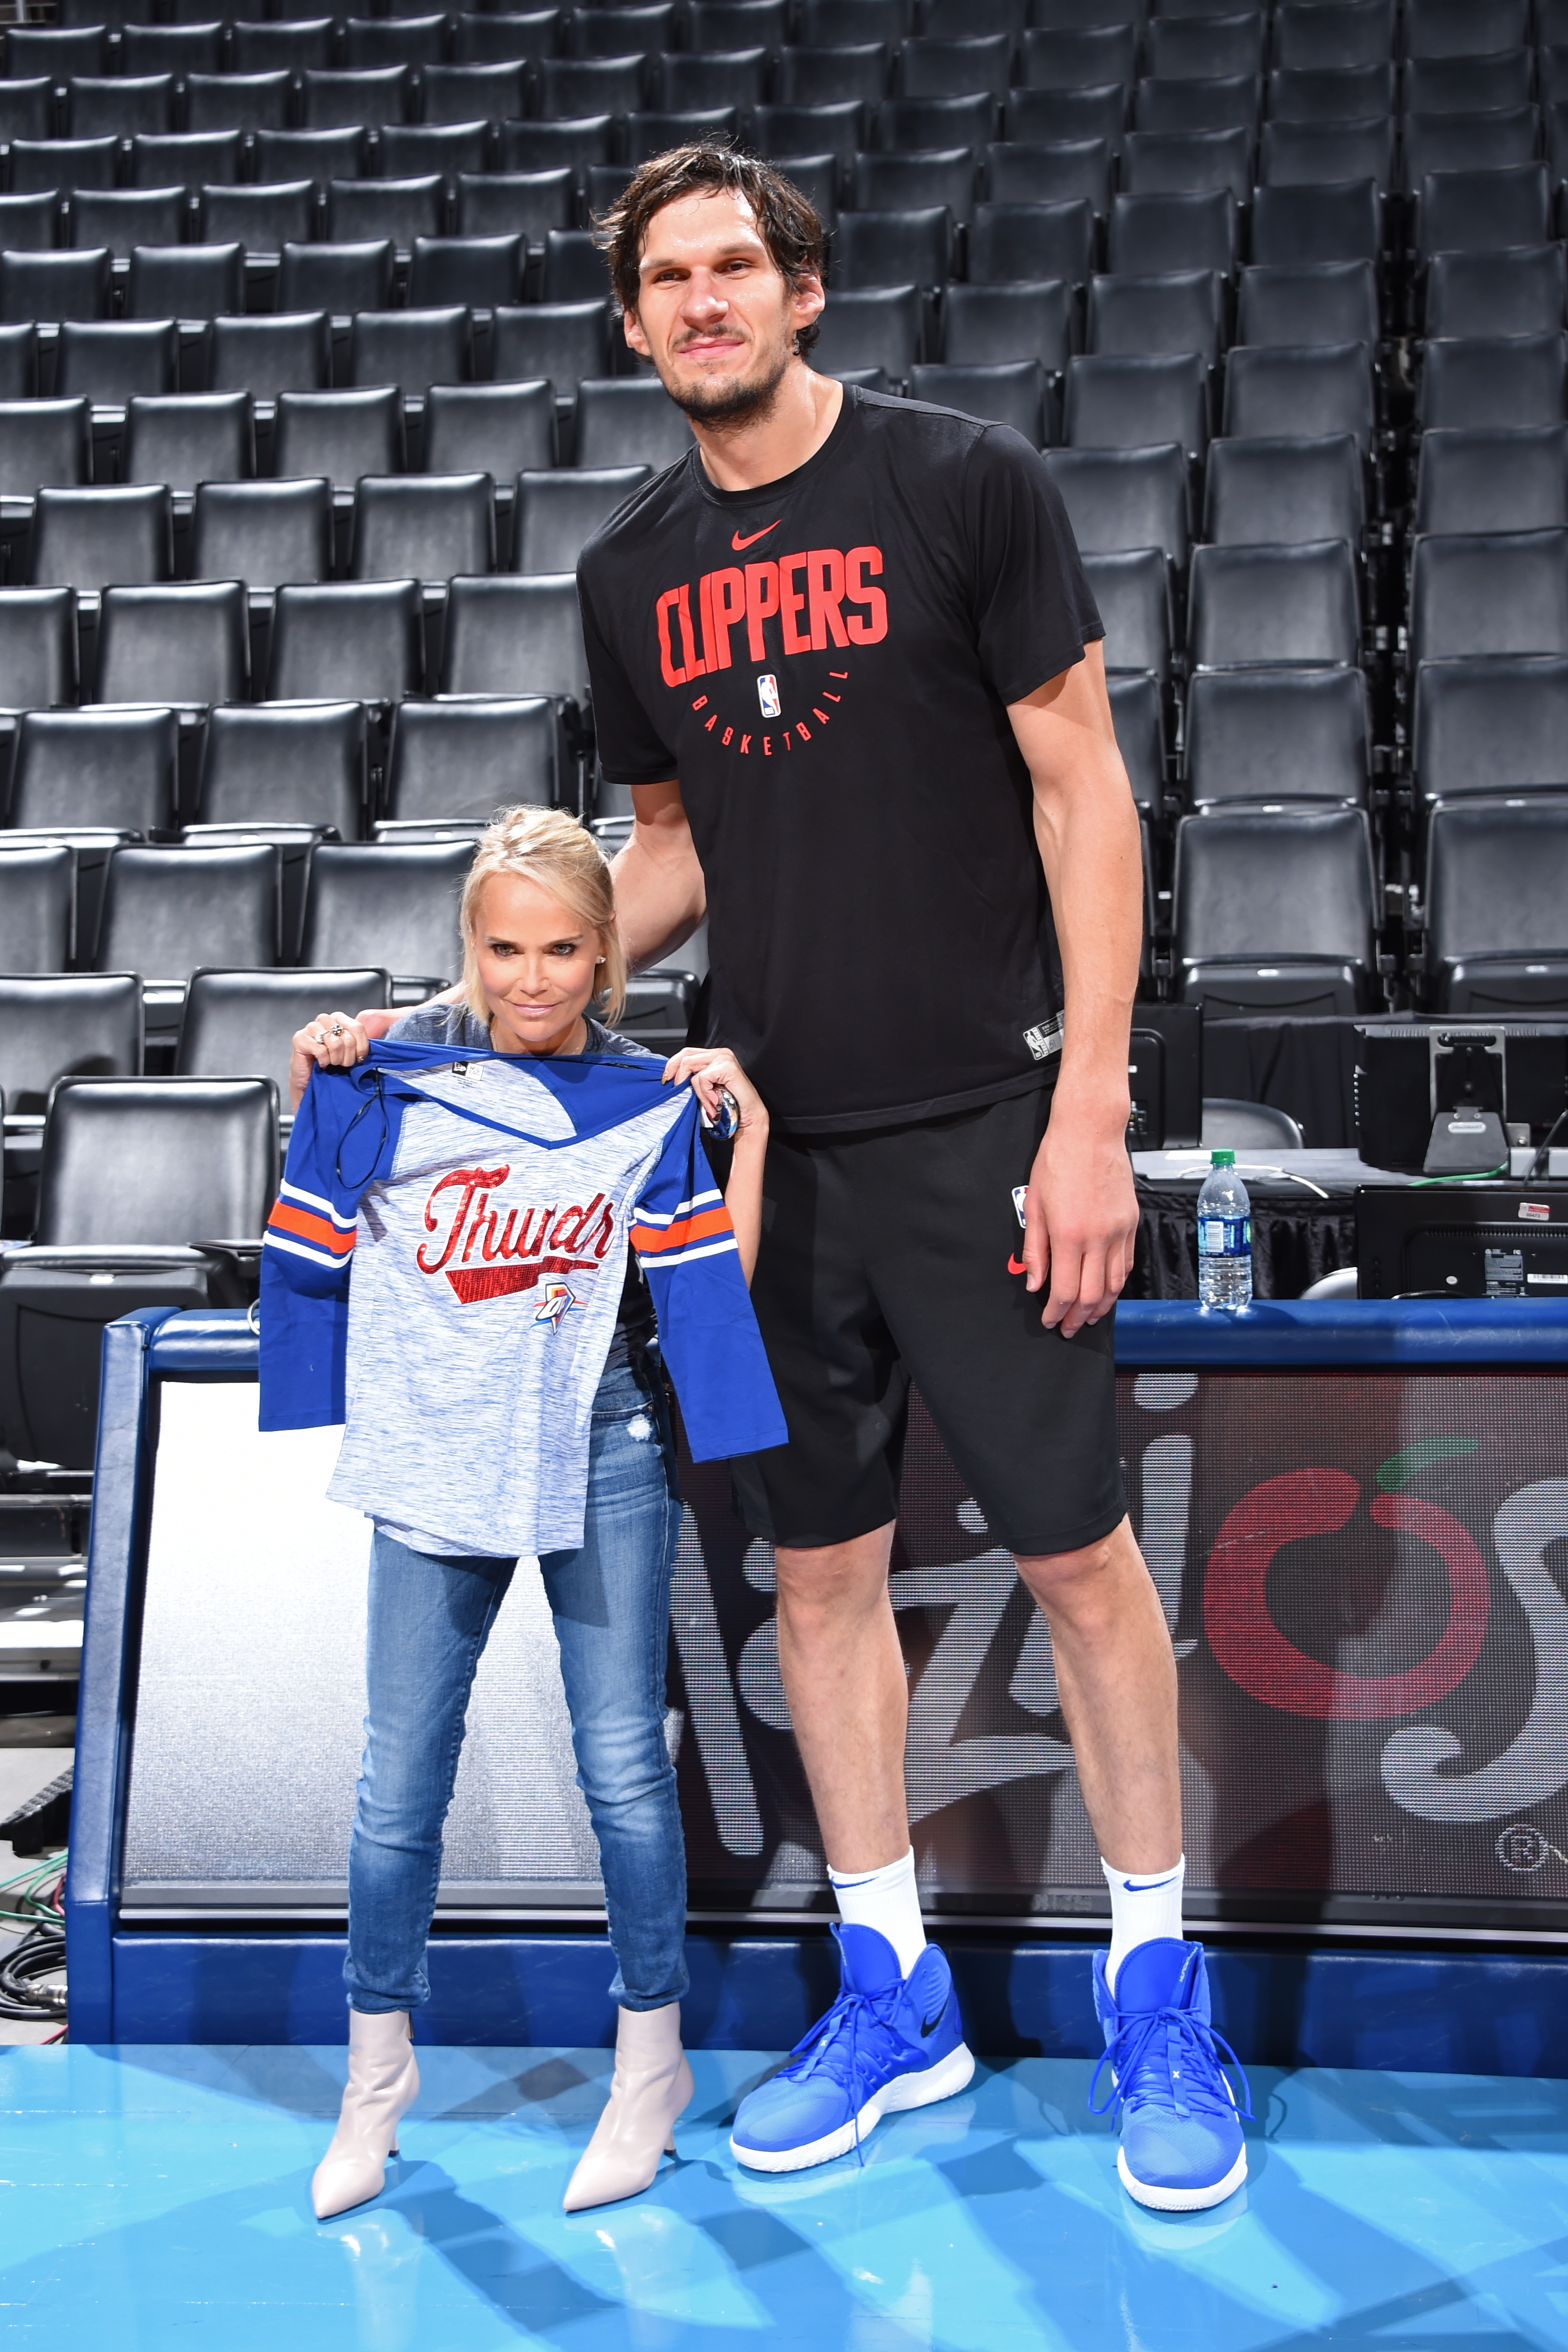 7'3 NBA player Boban Marjanović and his 5' wife : r/tall